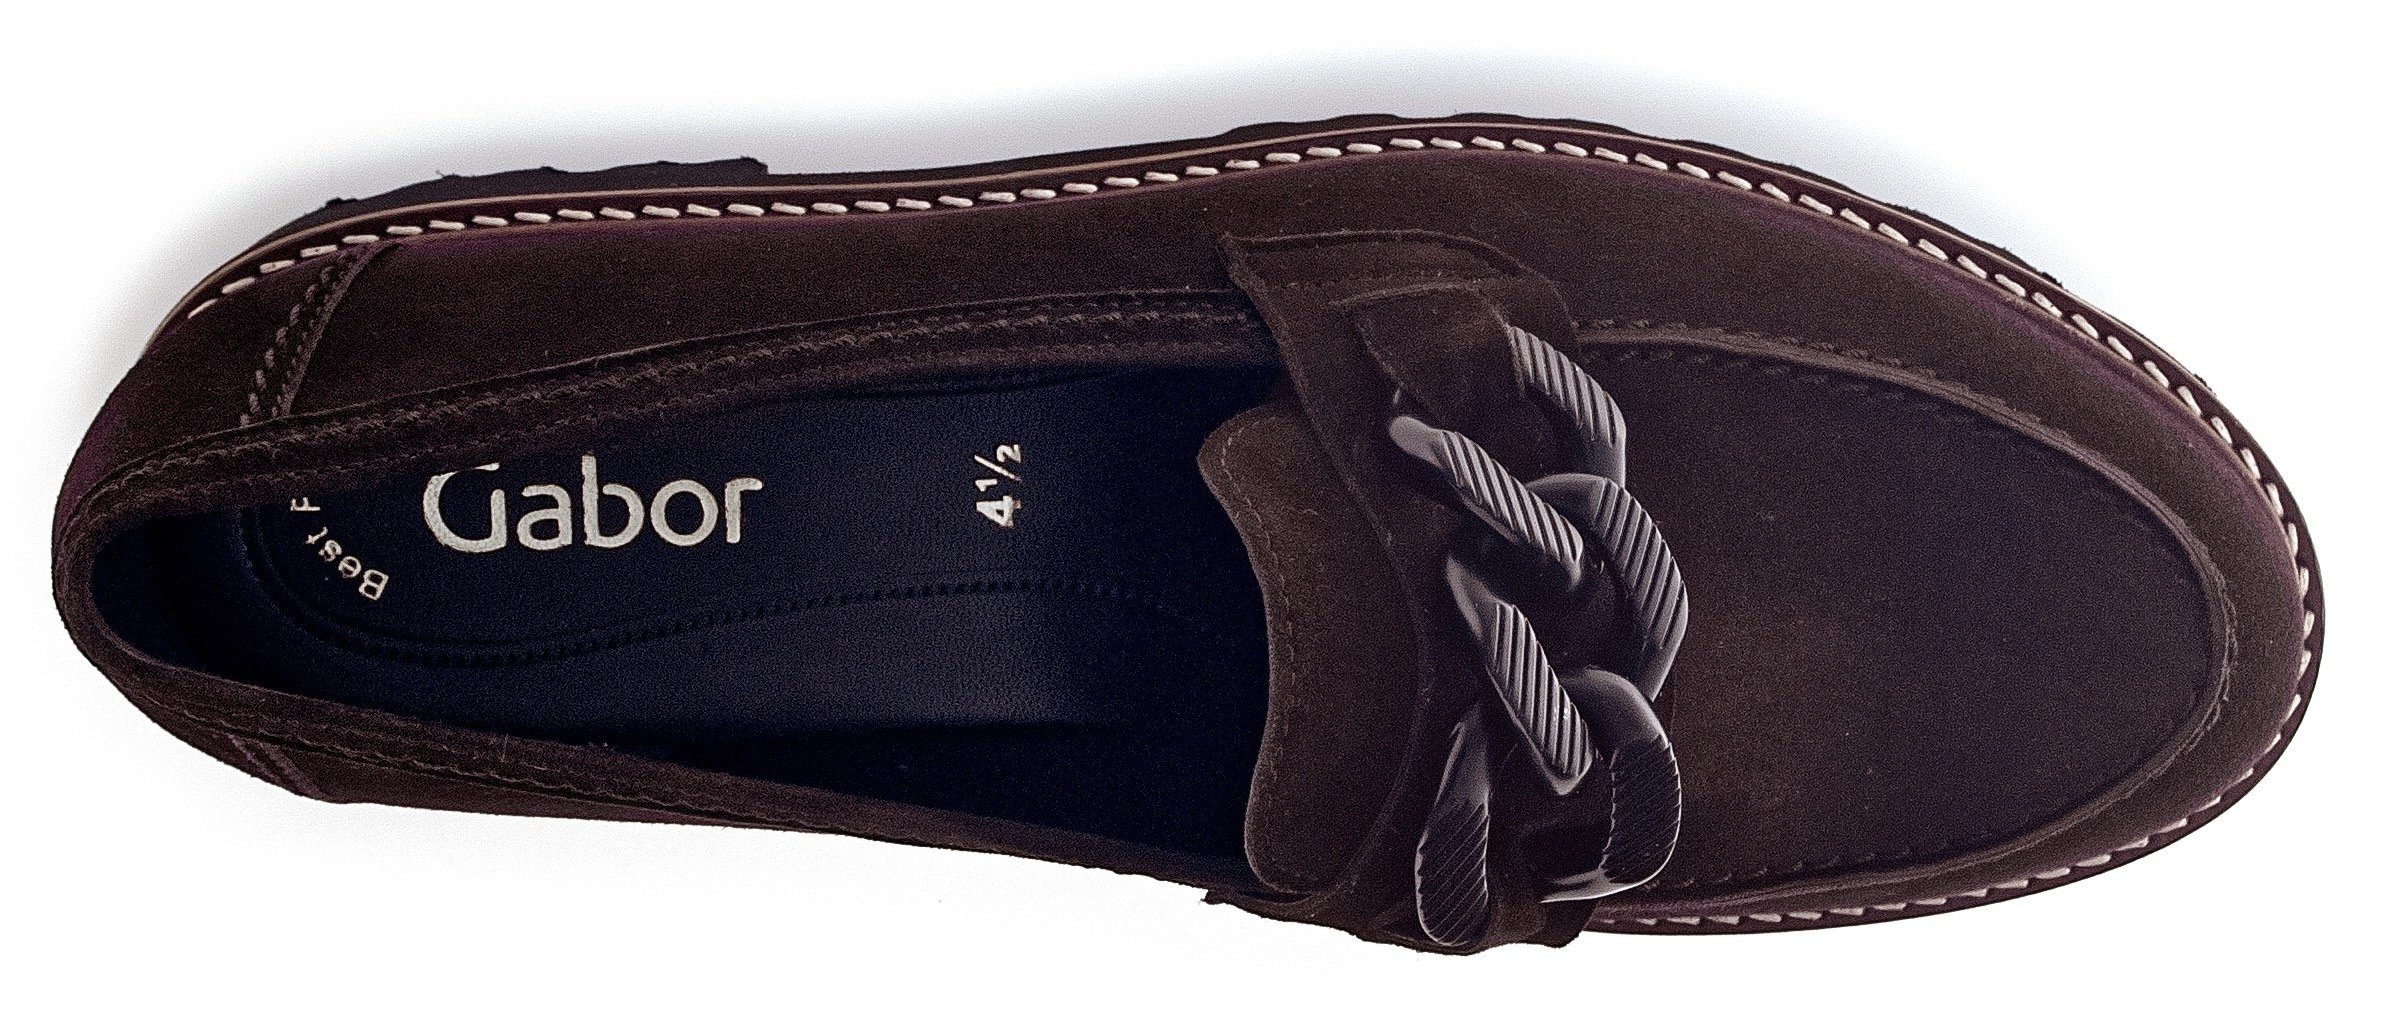 Fitting-Ausstattung Slipper Gabor mit dunkelbraun-schwarz Best